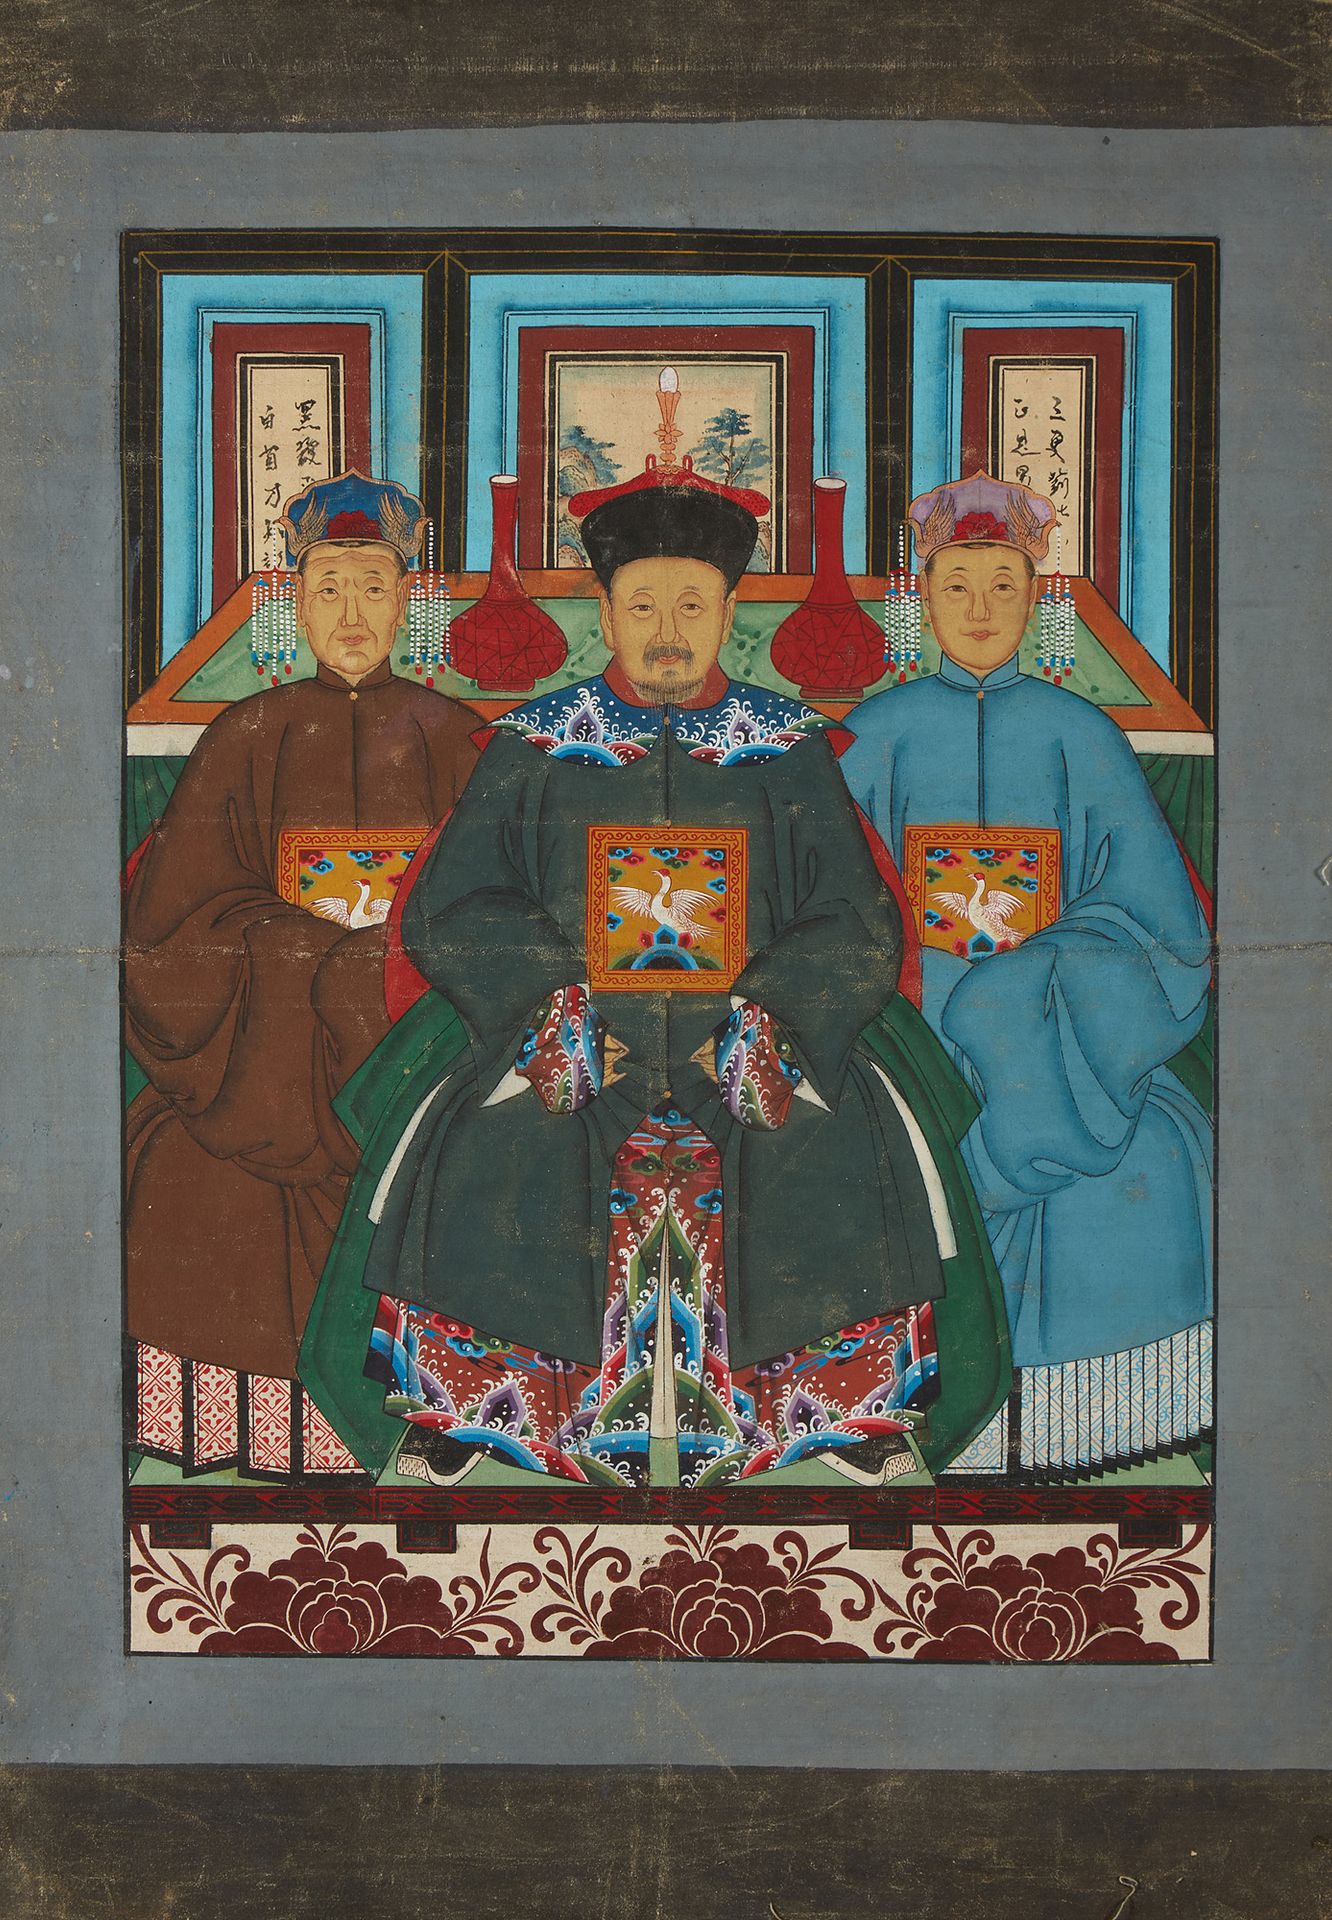 CHINE Ritratto di tre dignitari.
Pittura su tessuto.
Dim.: 80 x 67cm